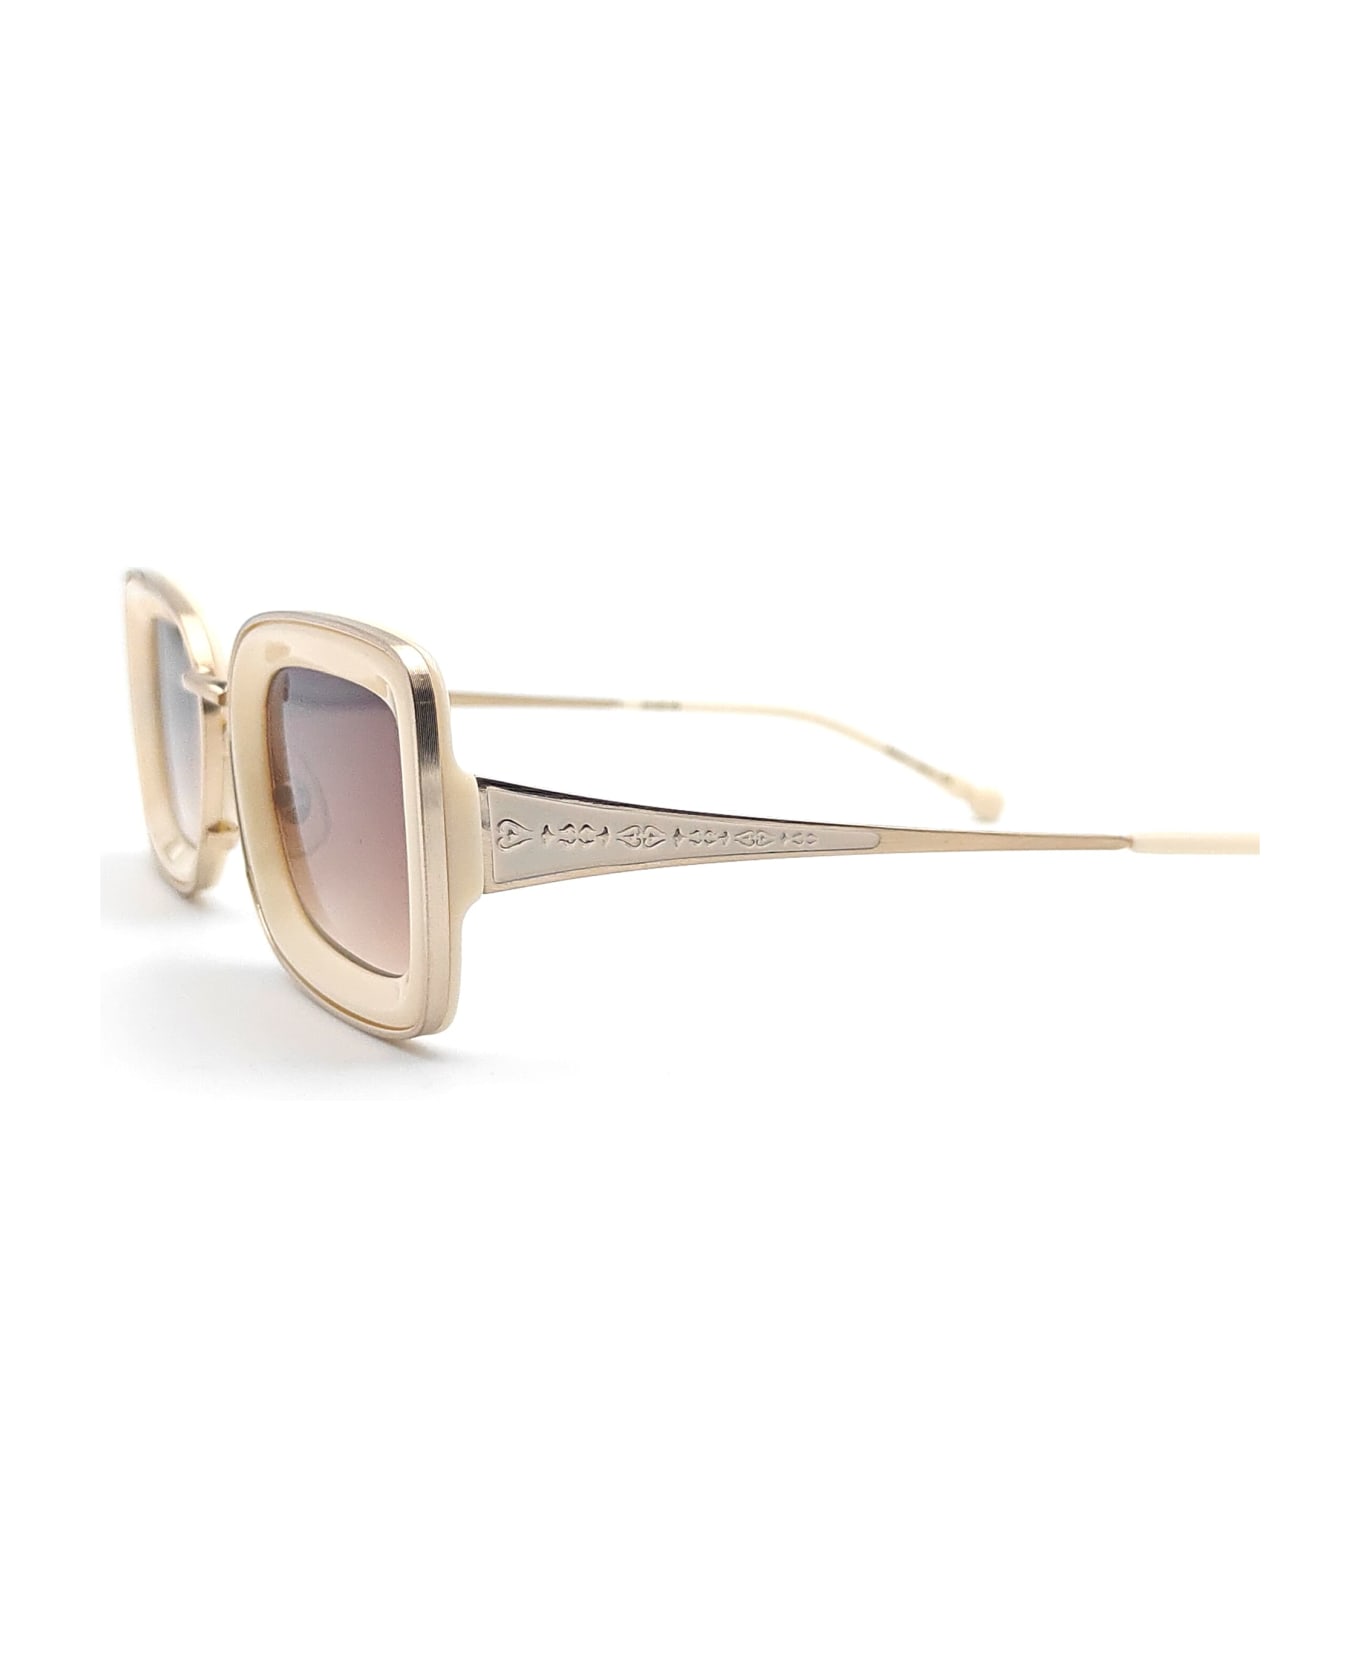 Matsuda M3124 - Brushed Gold / Milk White Sunglasses - Gold/White